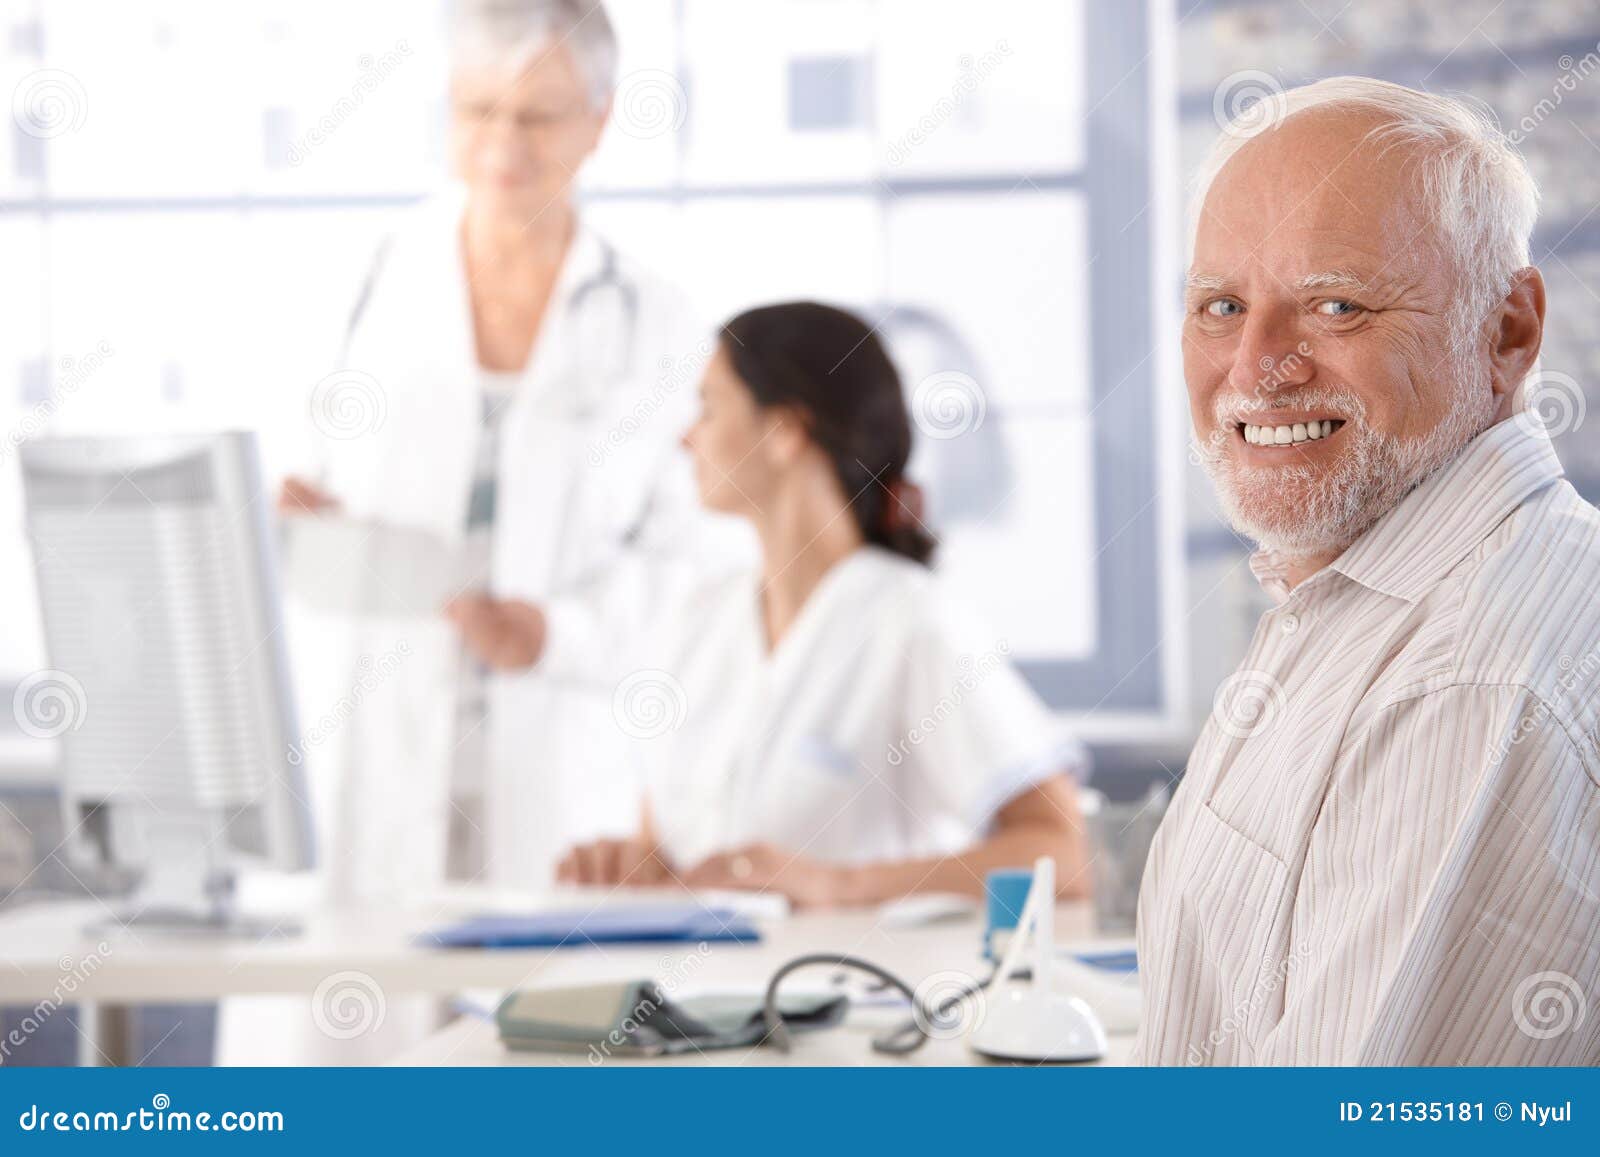 Elderly Man Waiting for Examination Smiling Stock Image - Image of ...